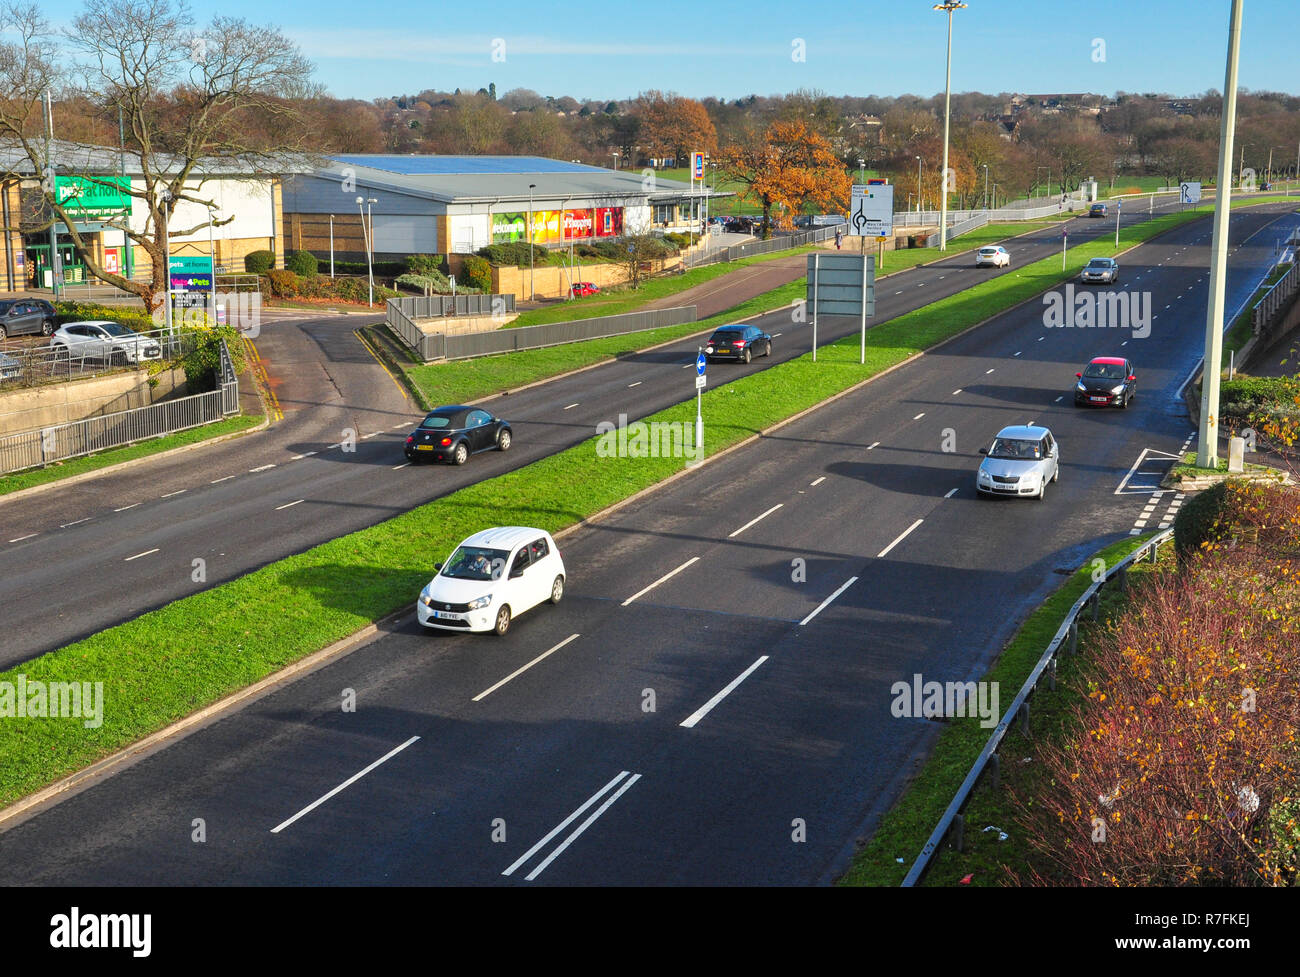 La circulation routière sur la voie rapide urbaine, Stevenage, Hertfordshire, England, UK Banque D'Images